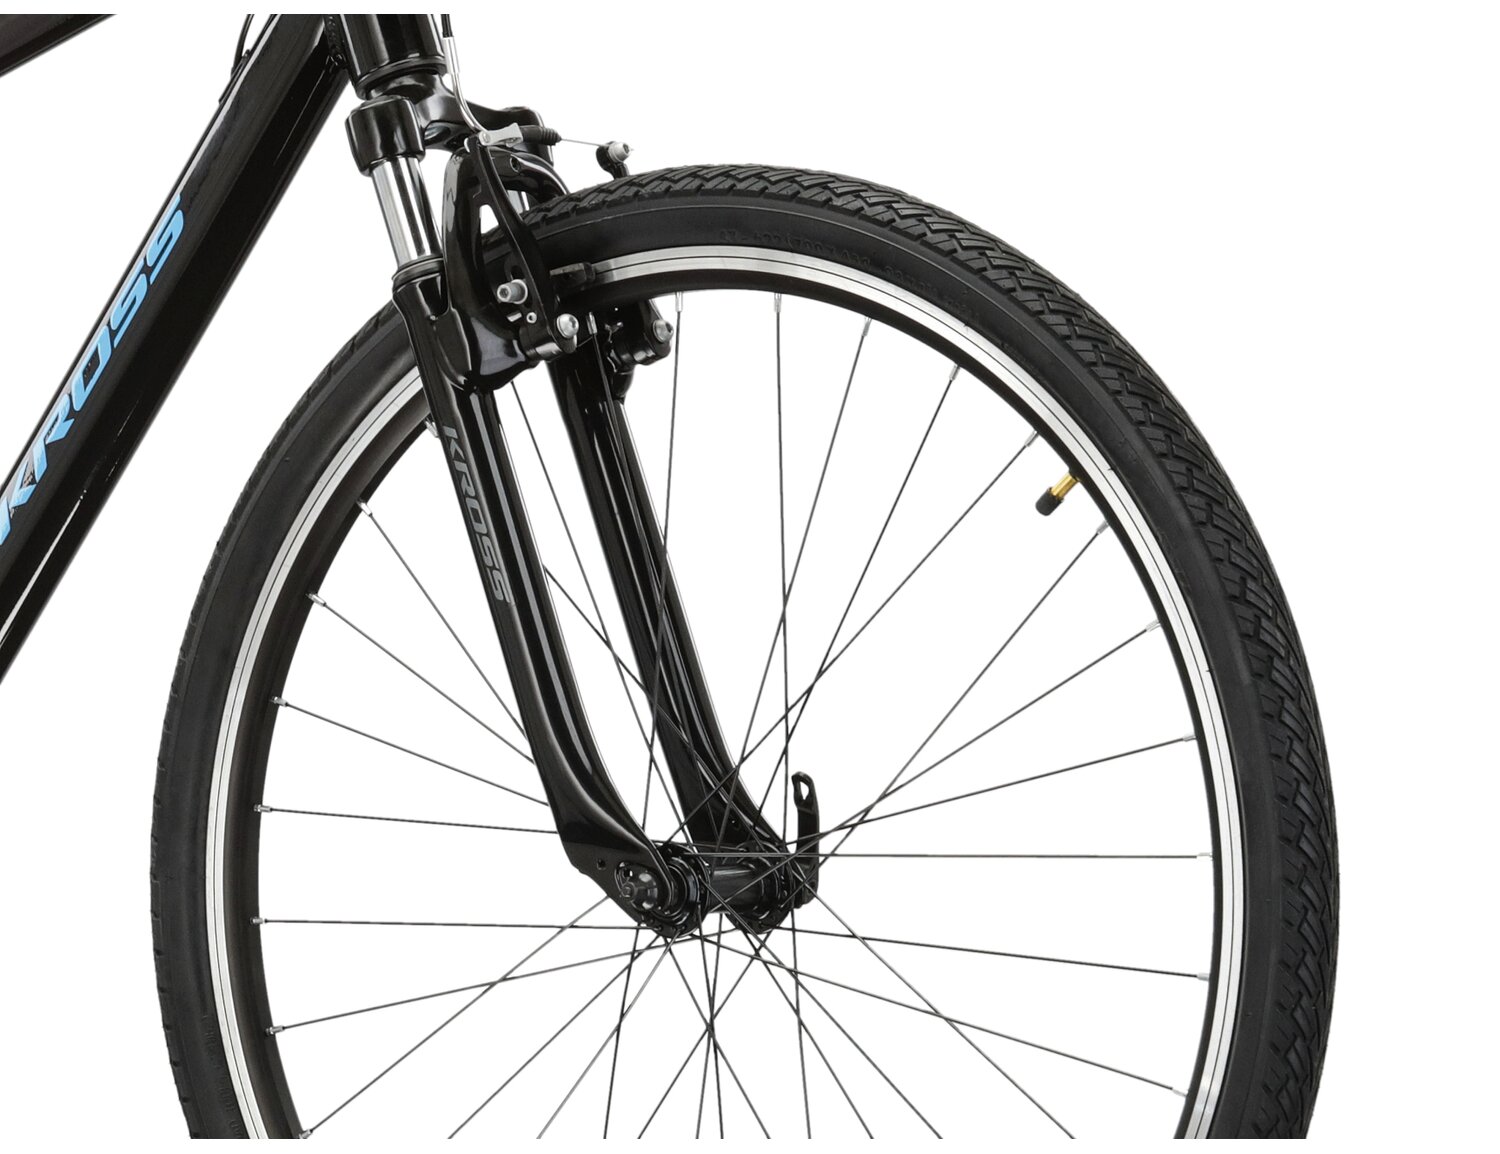 Aluminowa rama, amortyzowany widelec oraz opony Wanda w rowerze crossowym KROSS Evado 2.0 